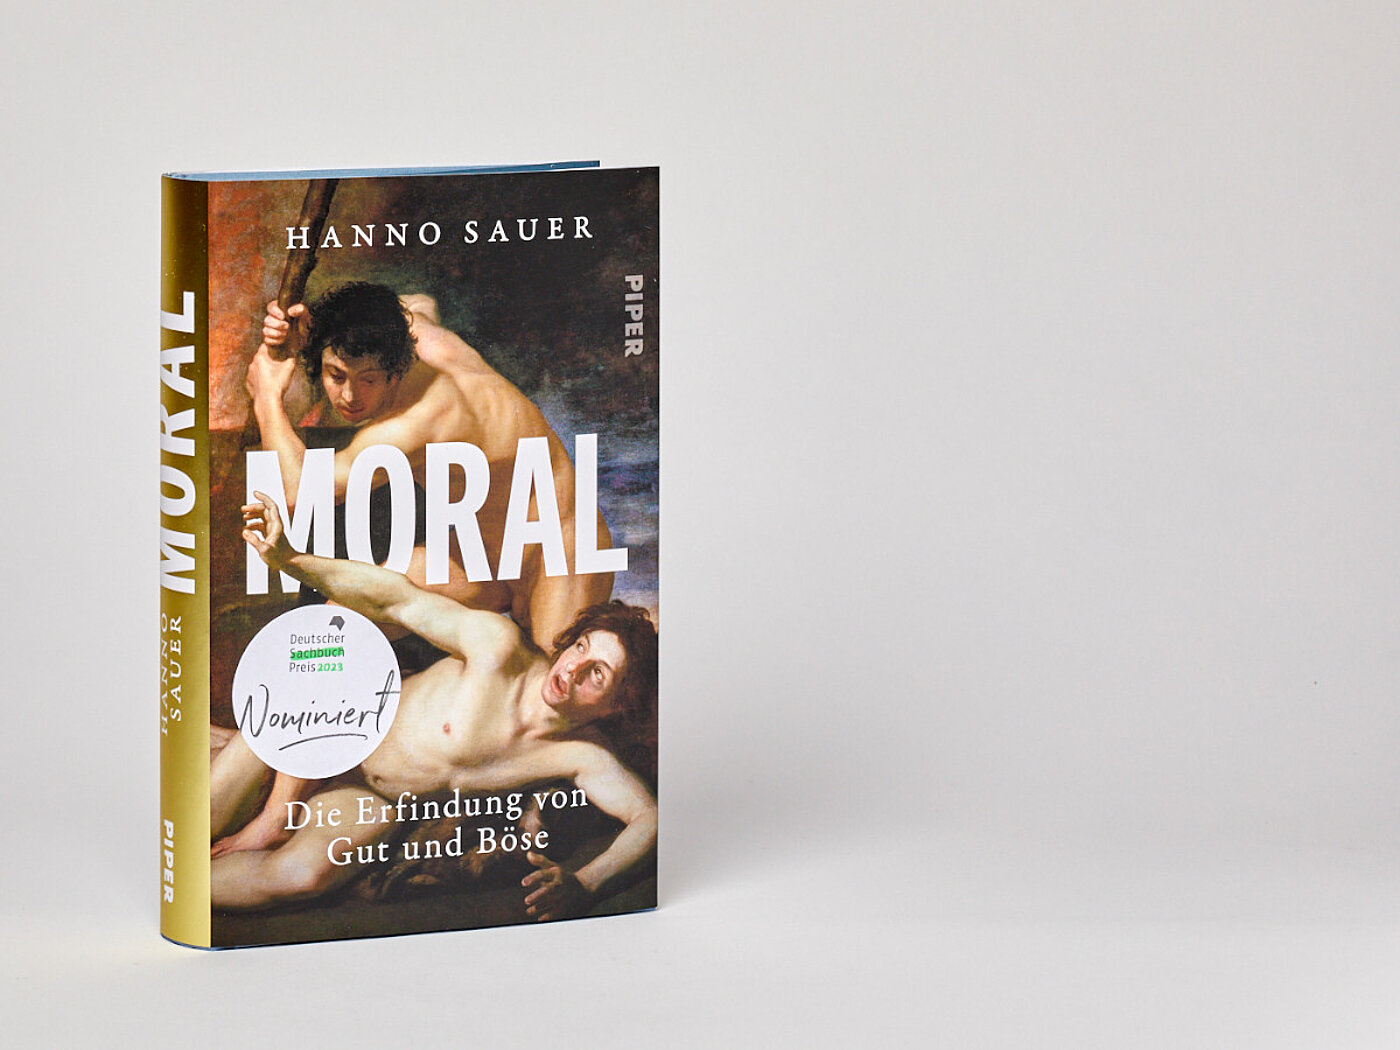 #sachbuchpreisbloggen Hanno Sauer "Moral"